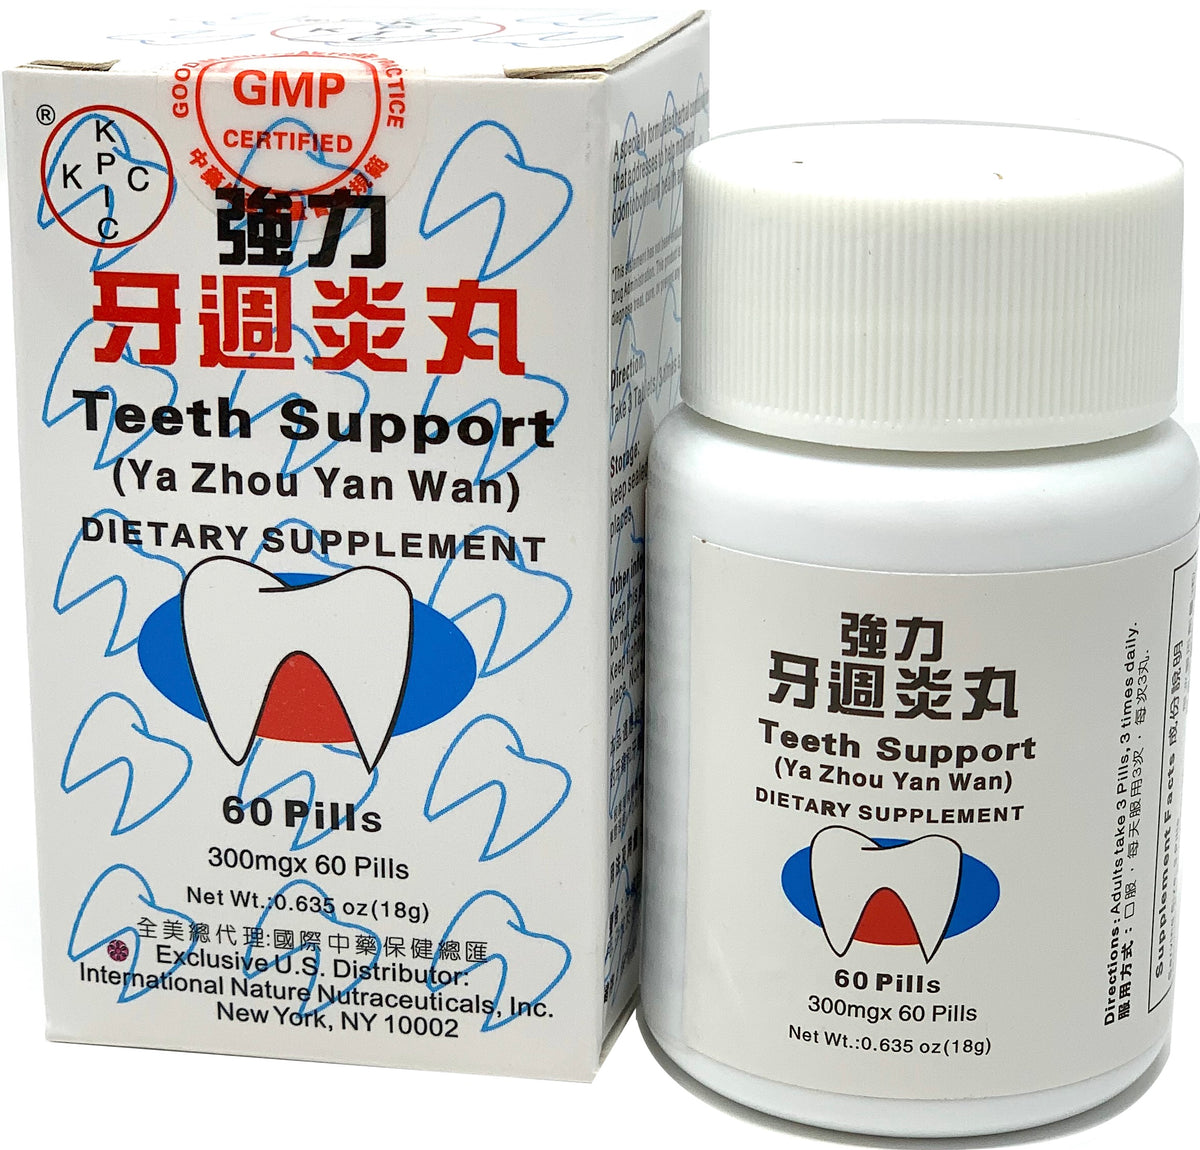 Teeth Support (Ya Zhou Yan Wan)